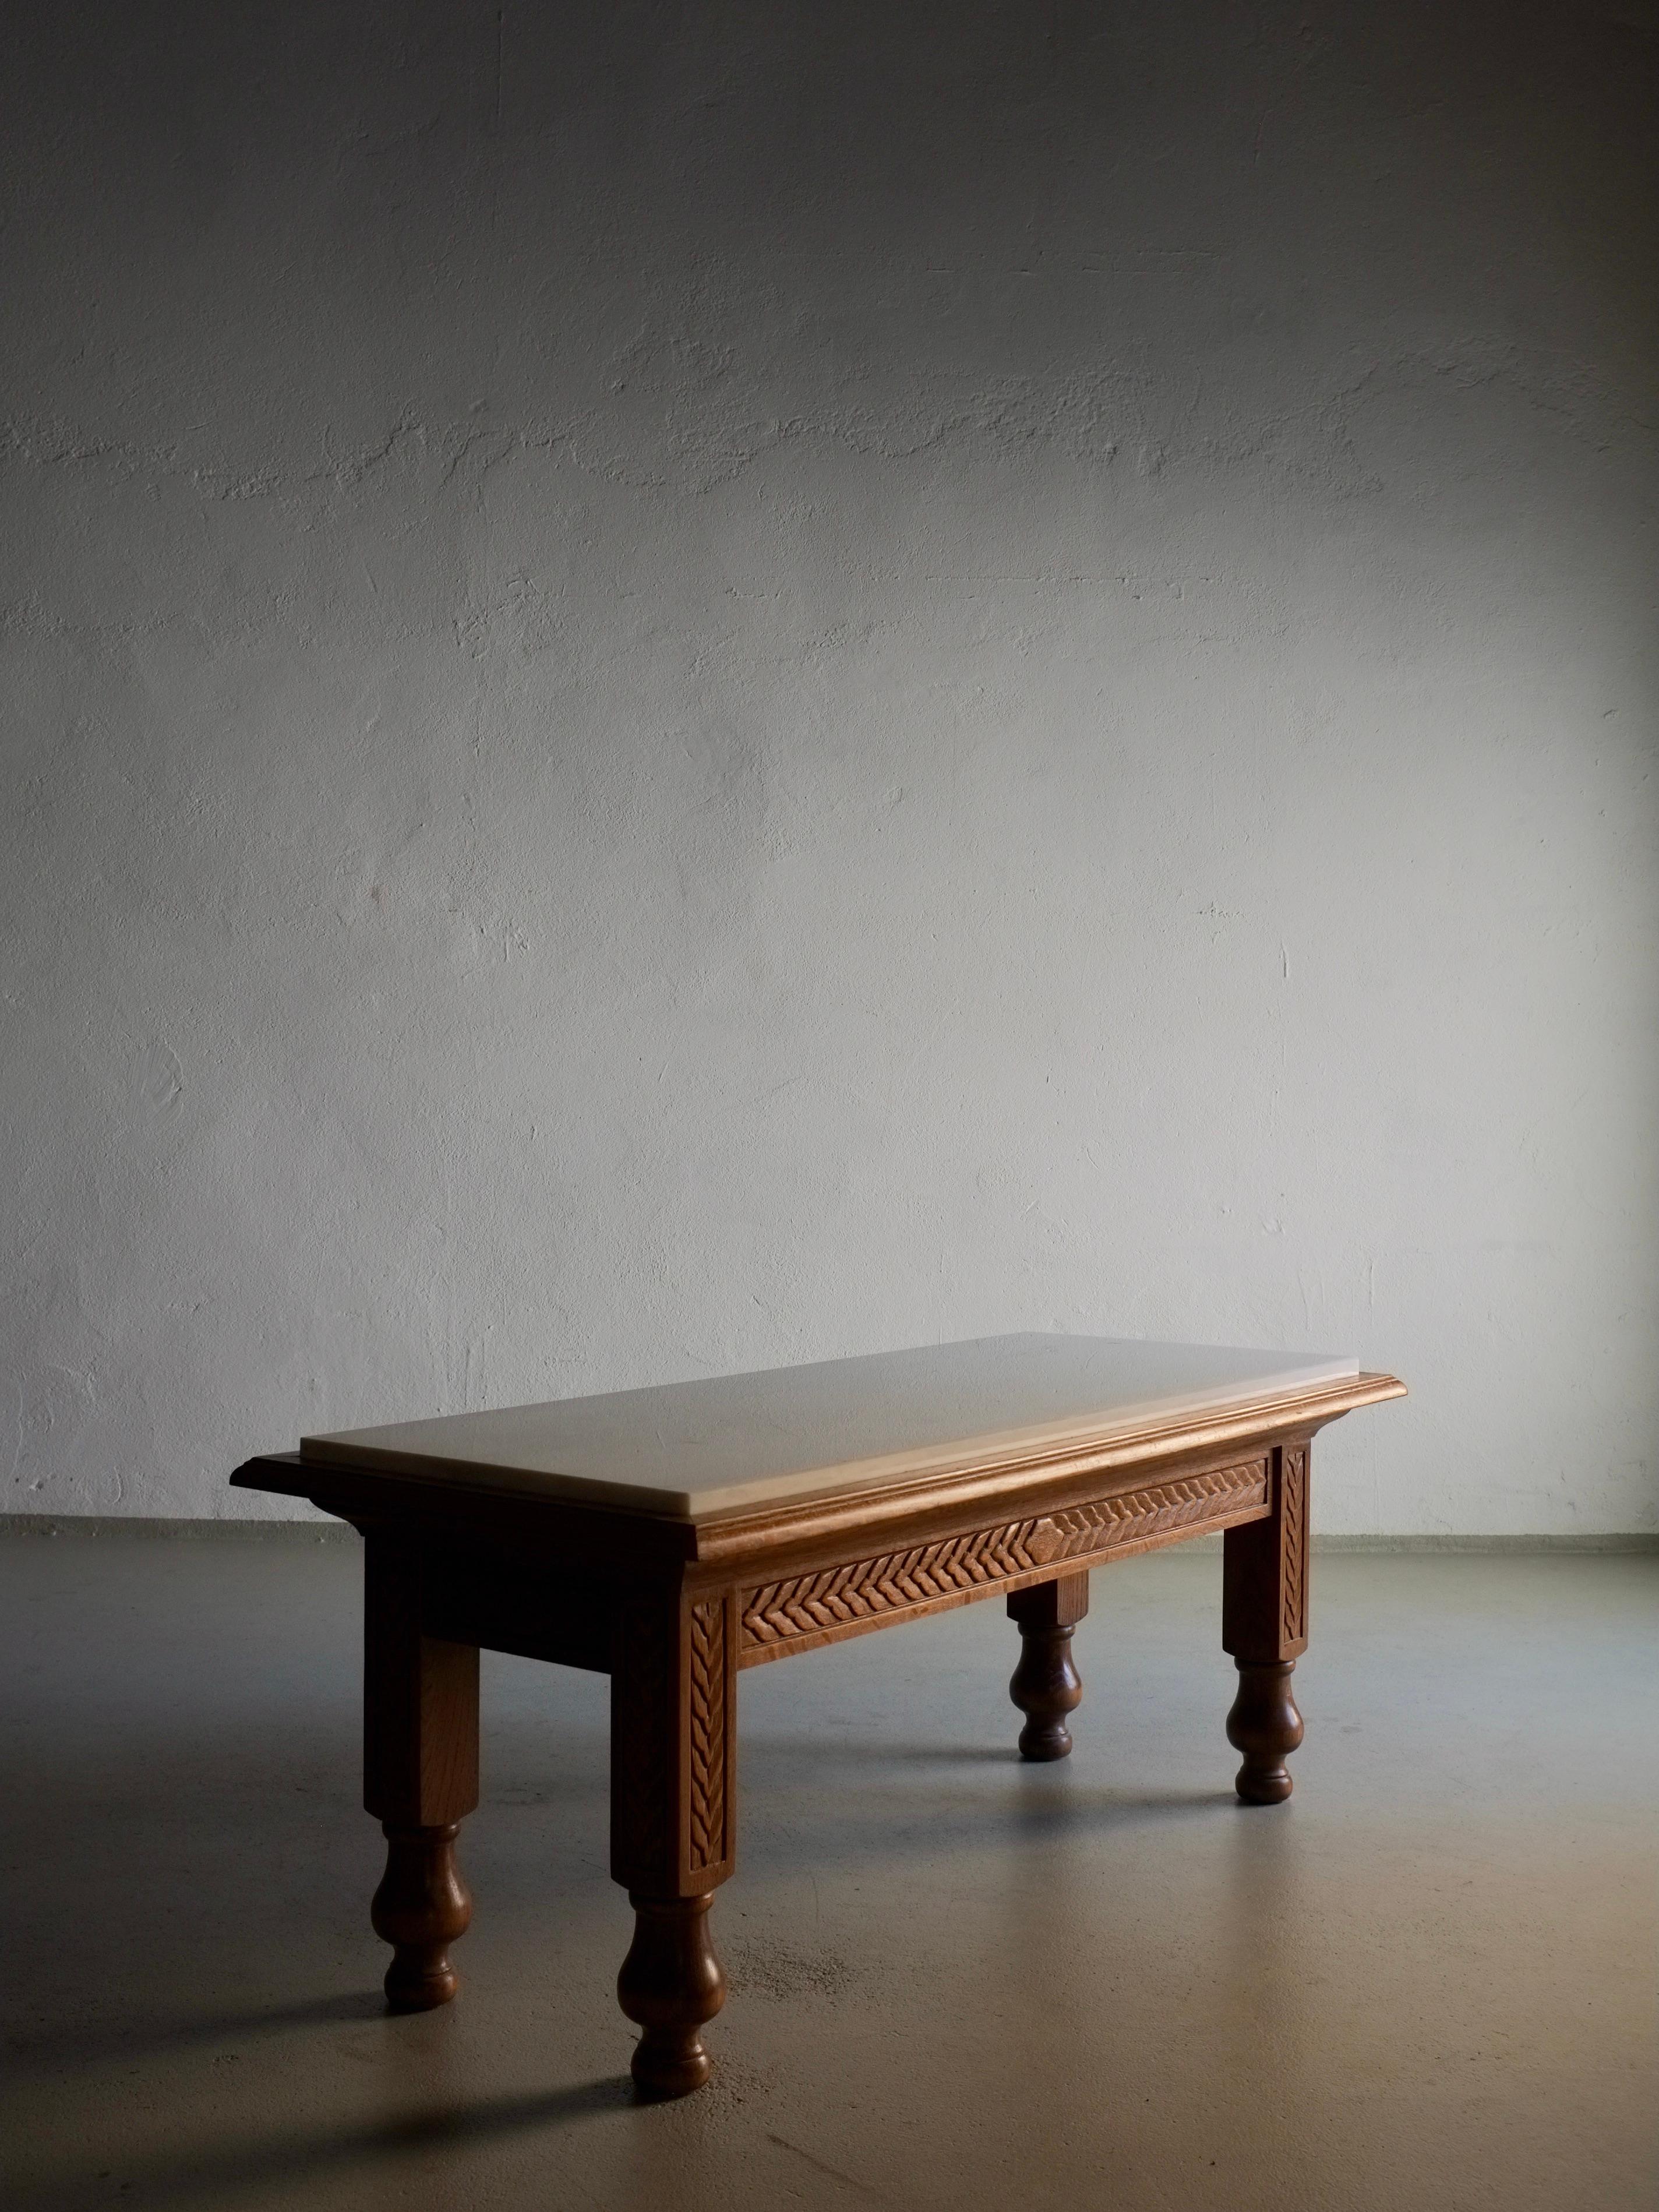 Geschnitzter Couchtisch aus Eichenholz mit einer Tischplatte aus weißem Marmor. Ein gewichtiger Gegenstand.